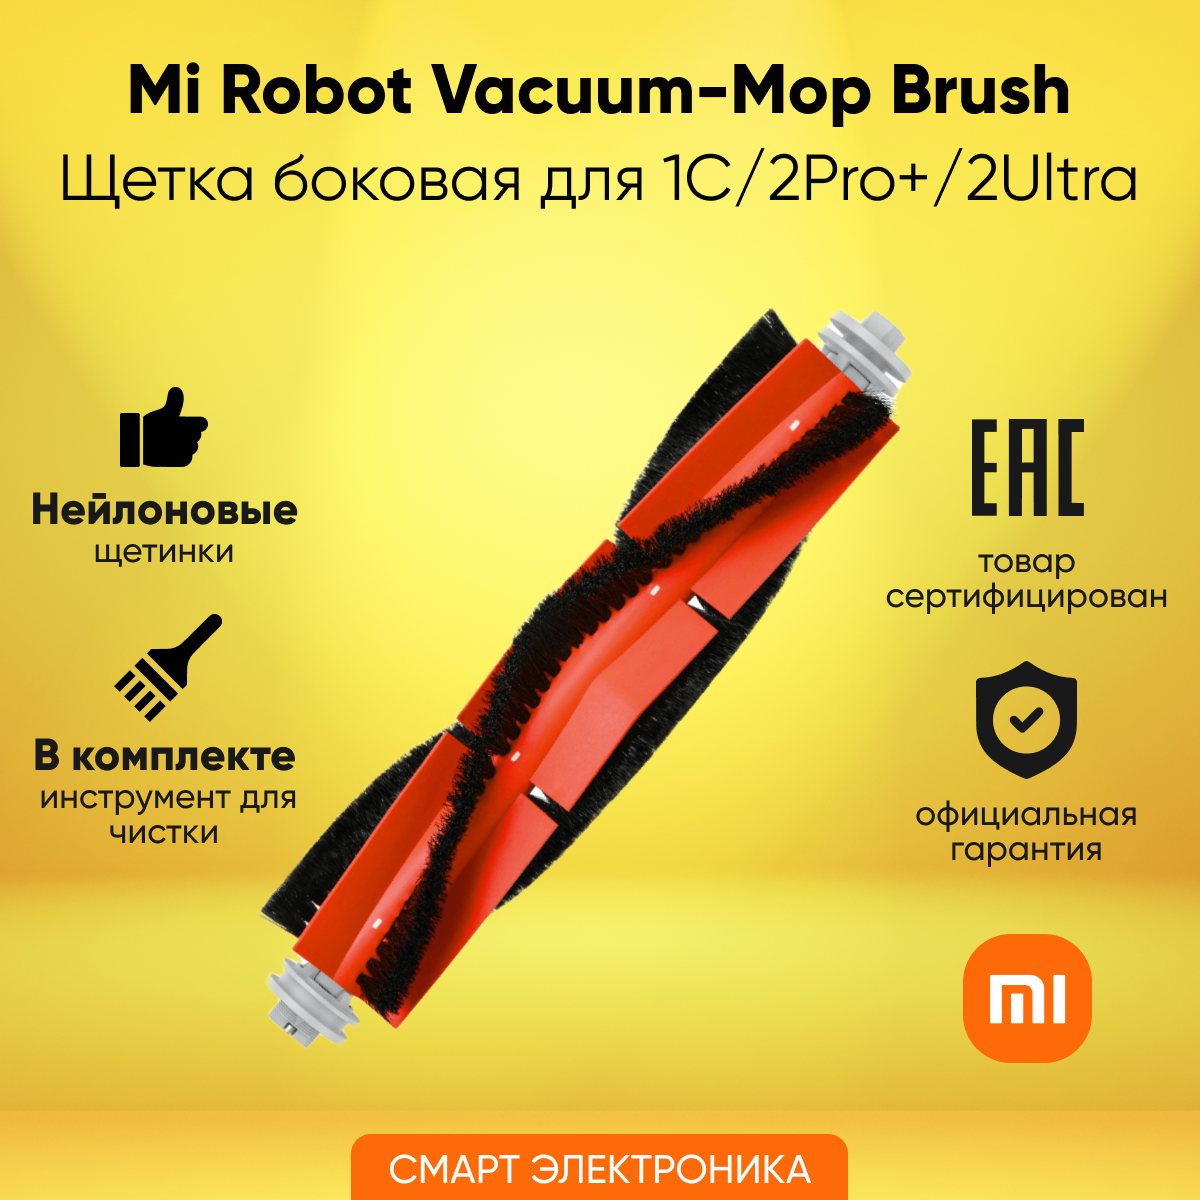 Щетка основная д/пылесоса Mi Robot Vacuum-Mop 1C/2Pro+/2Ultra Brush (BHR5325TY)